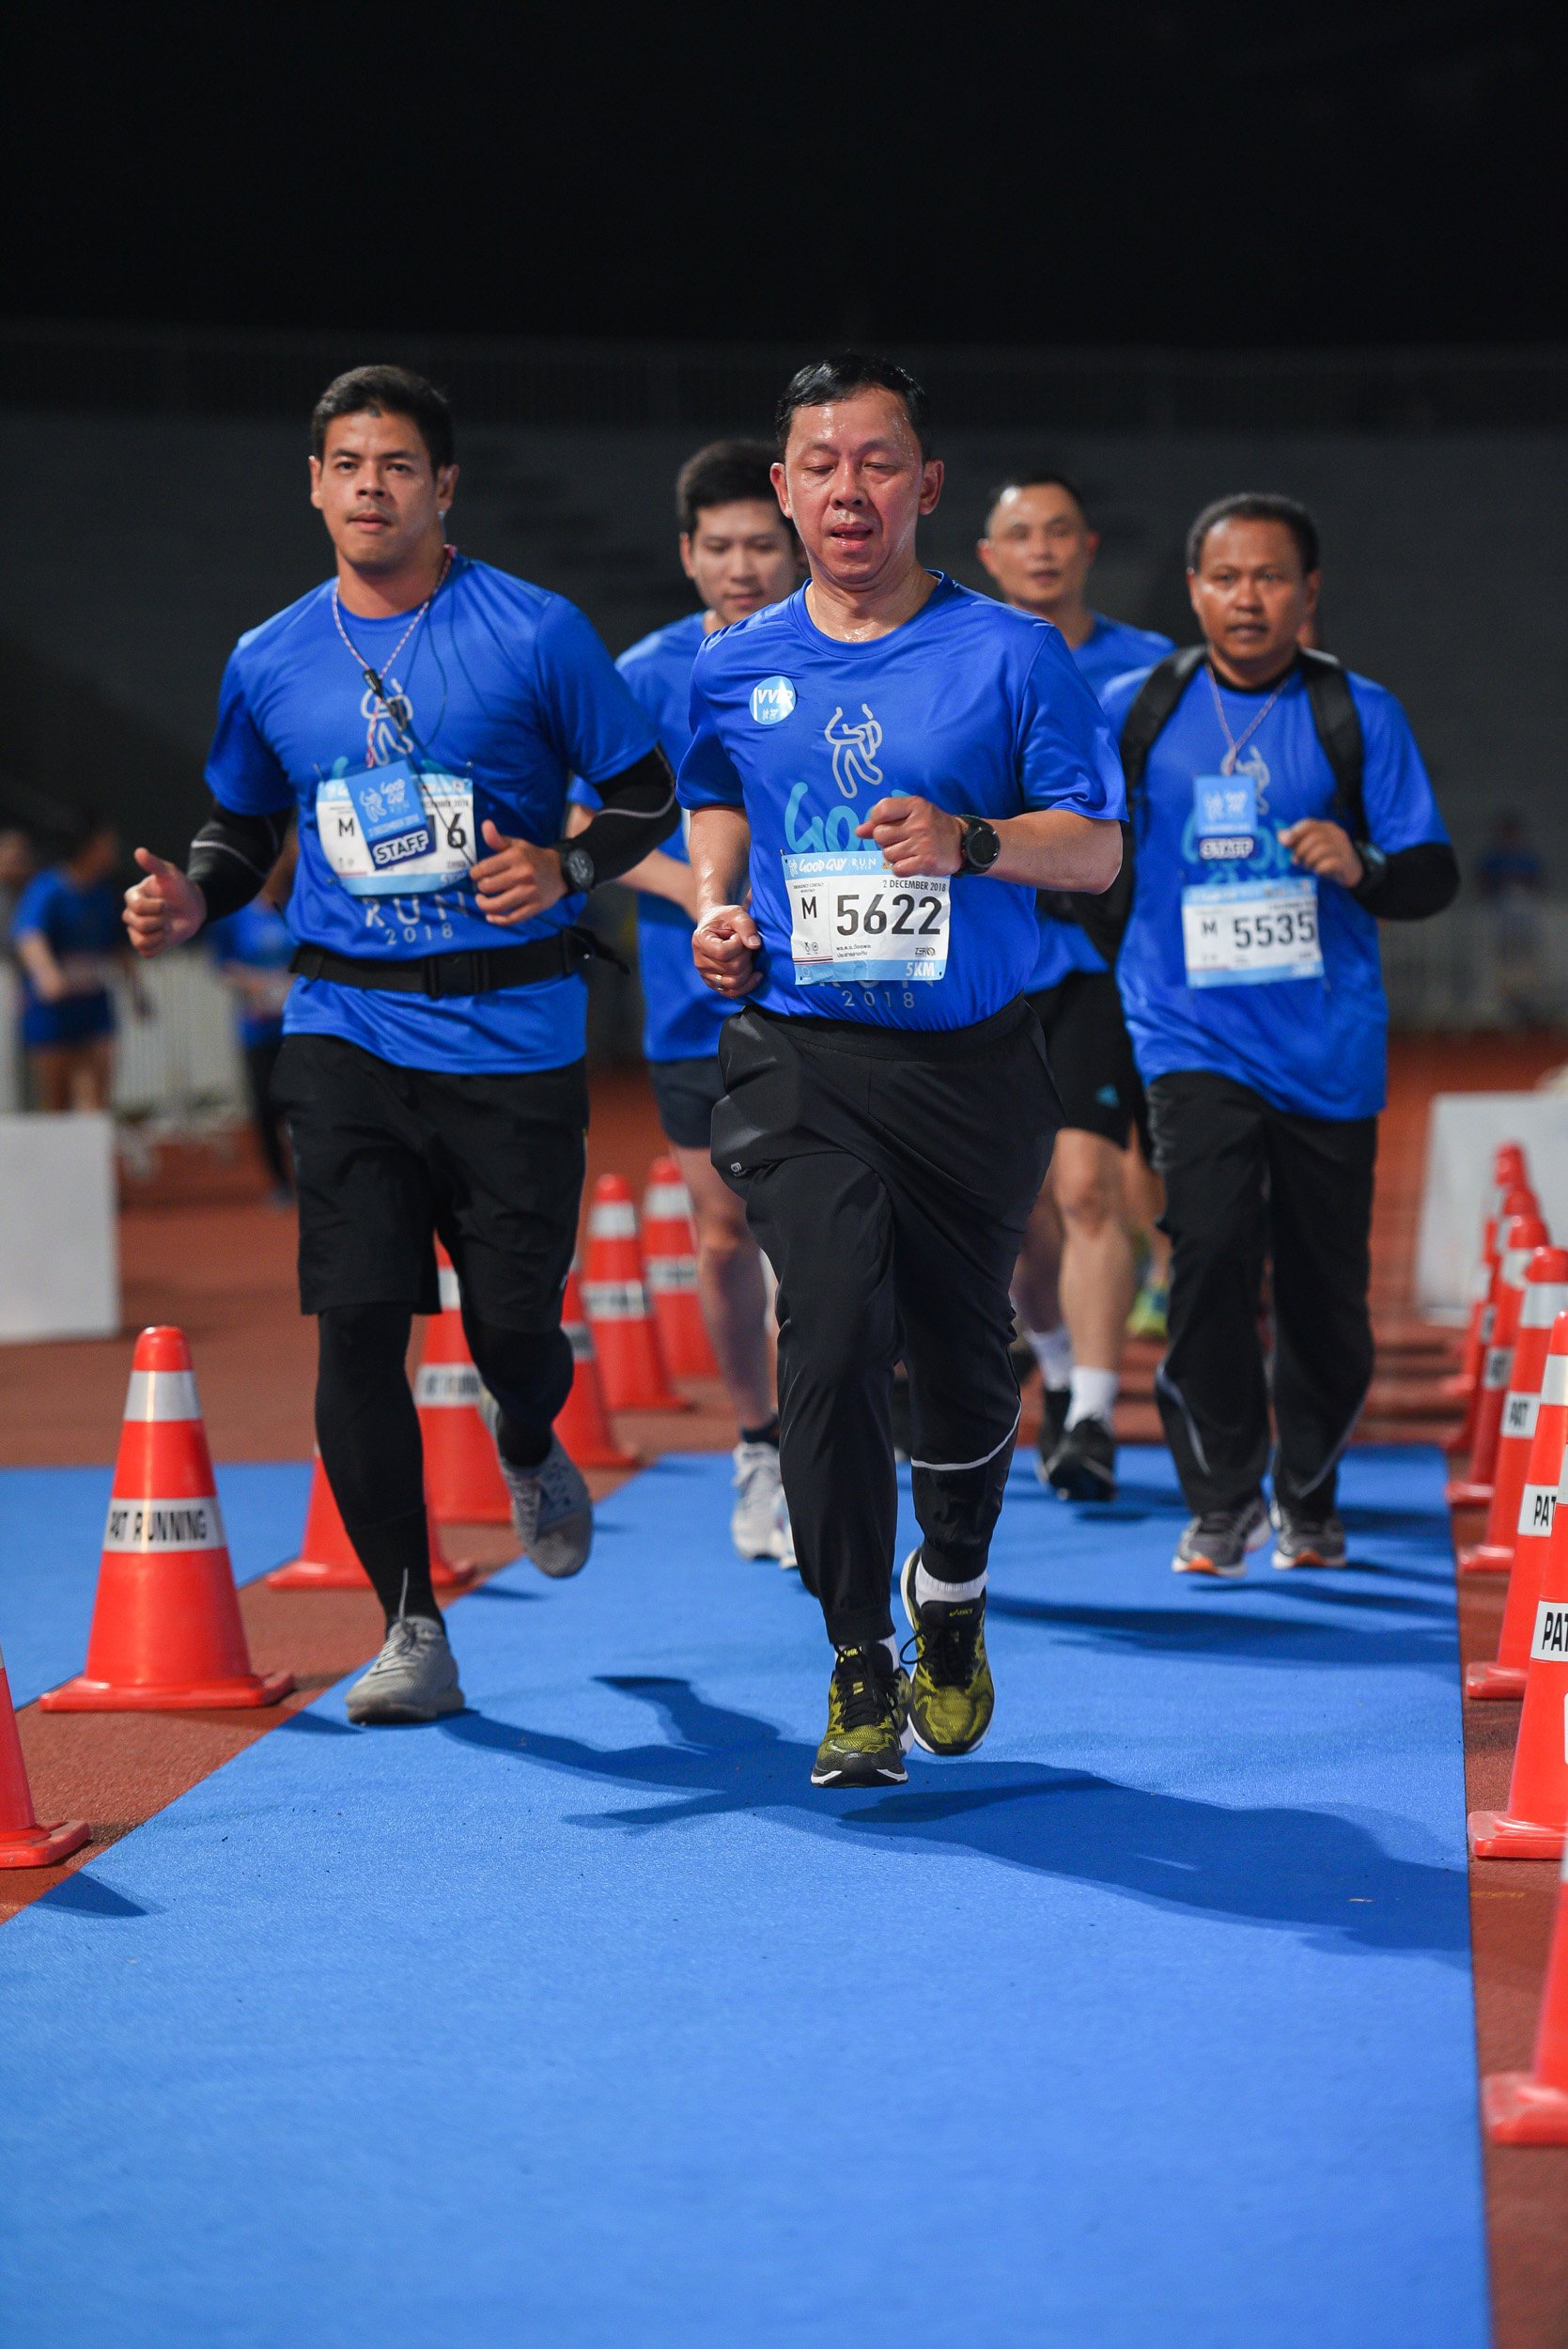 นักวิ่งครึ่งหมื่นประเดิมศึกเดิน-วิ่ง 'กู๊ด กาย รัน 2018' thaihealth